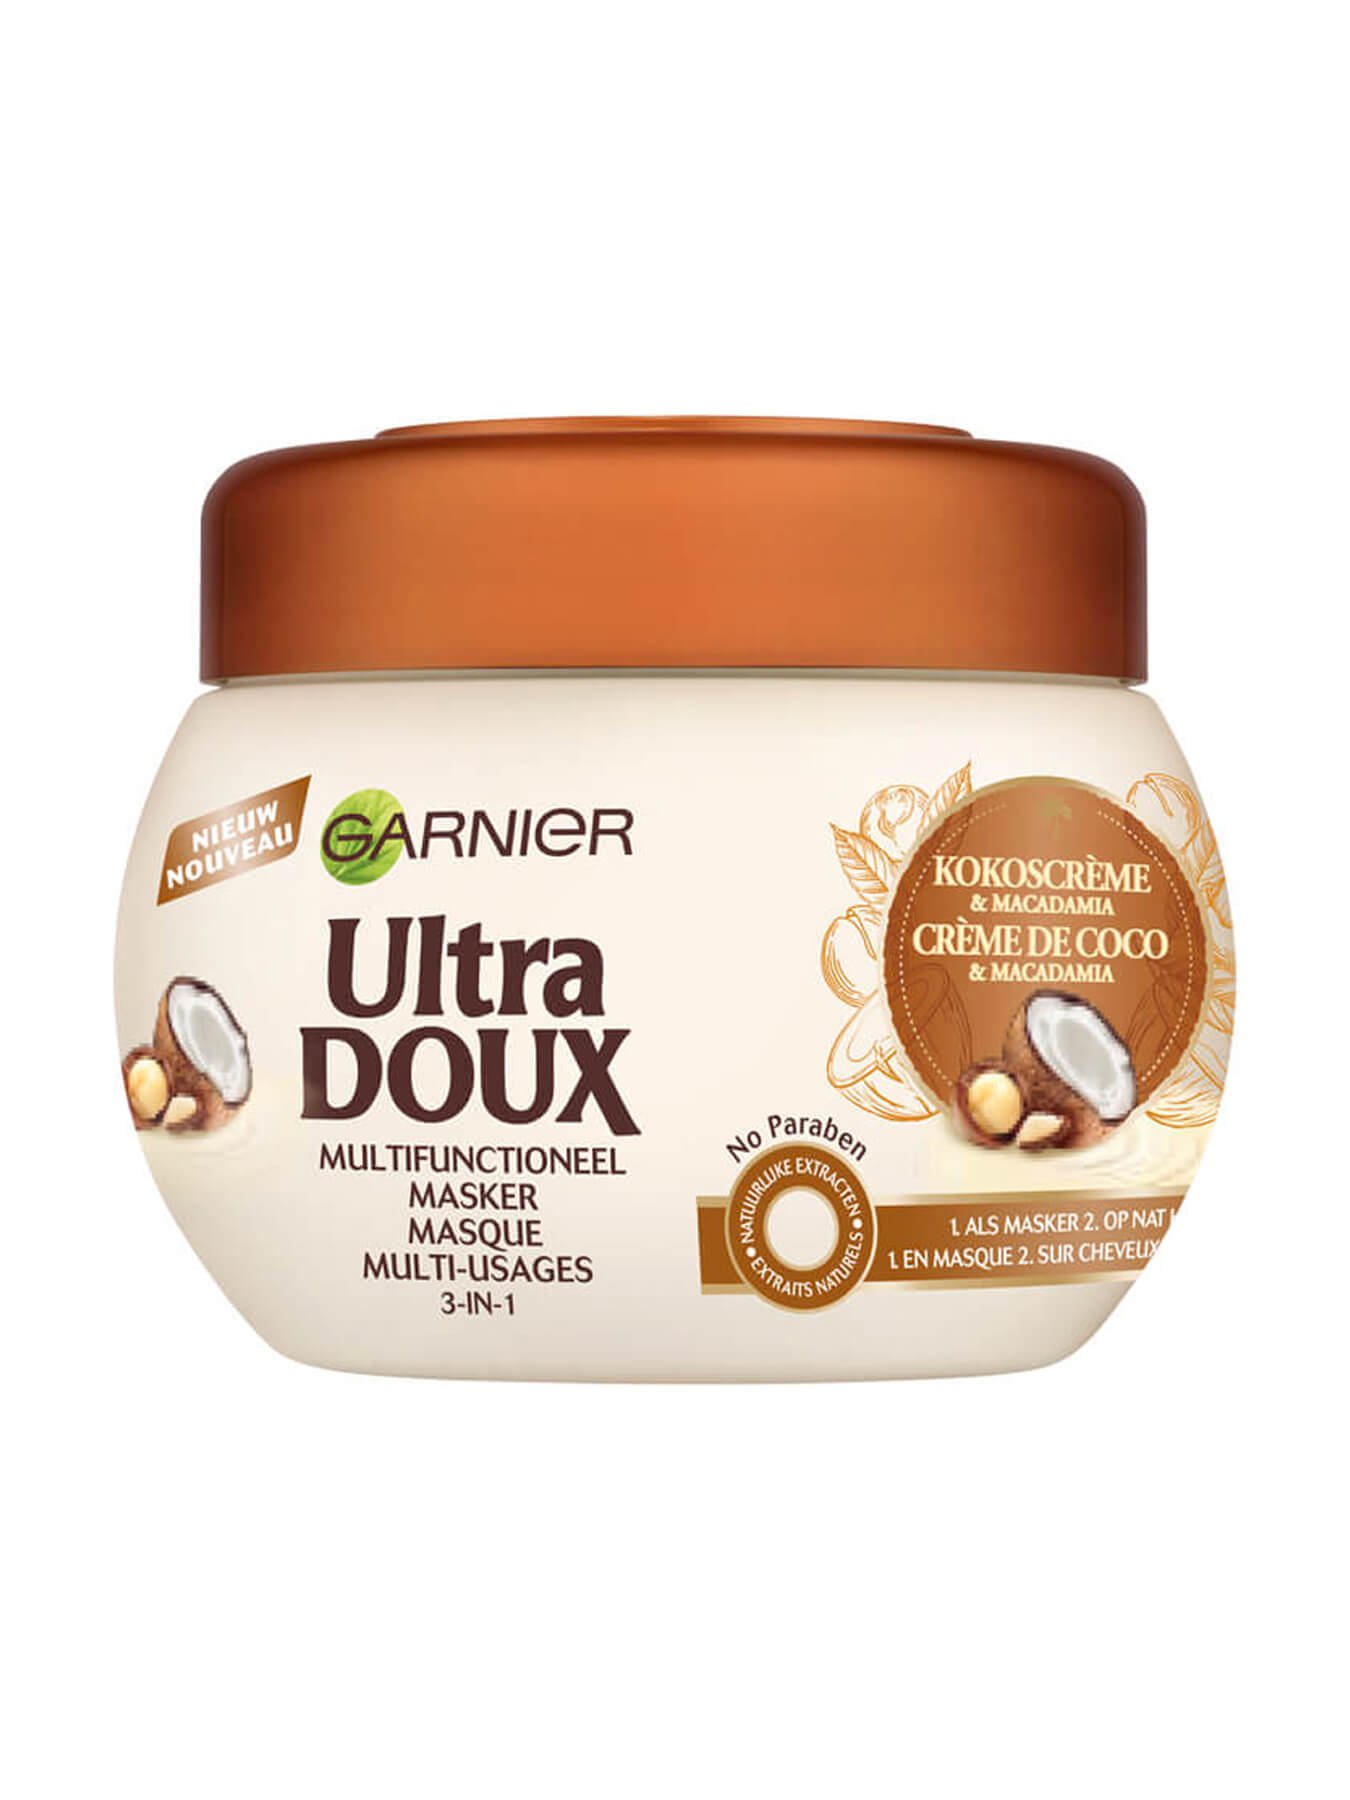 Ultra Doux Multifunctioneel masker kokoscreme & macadamia